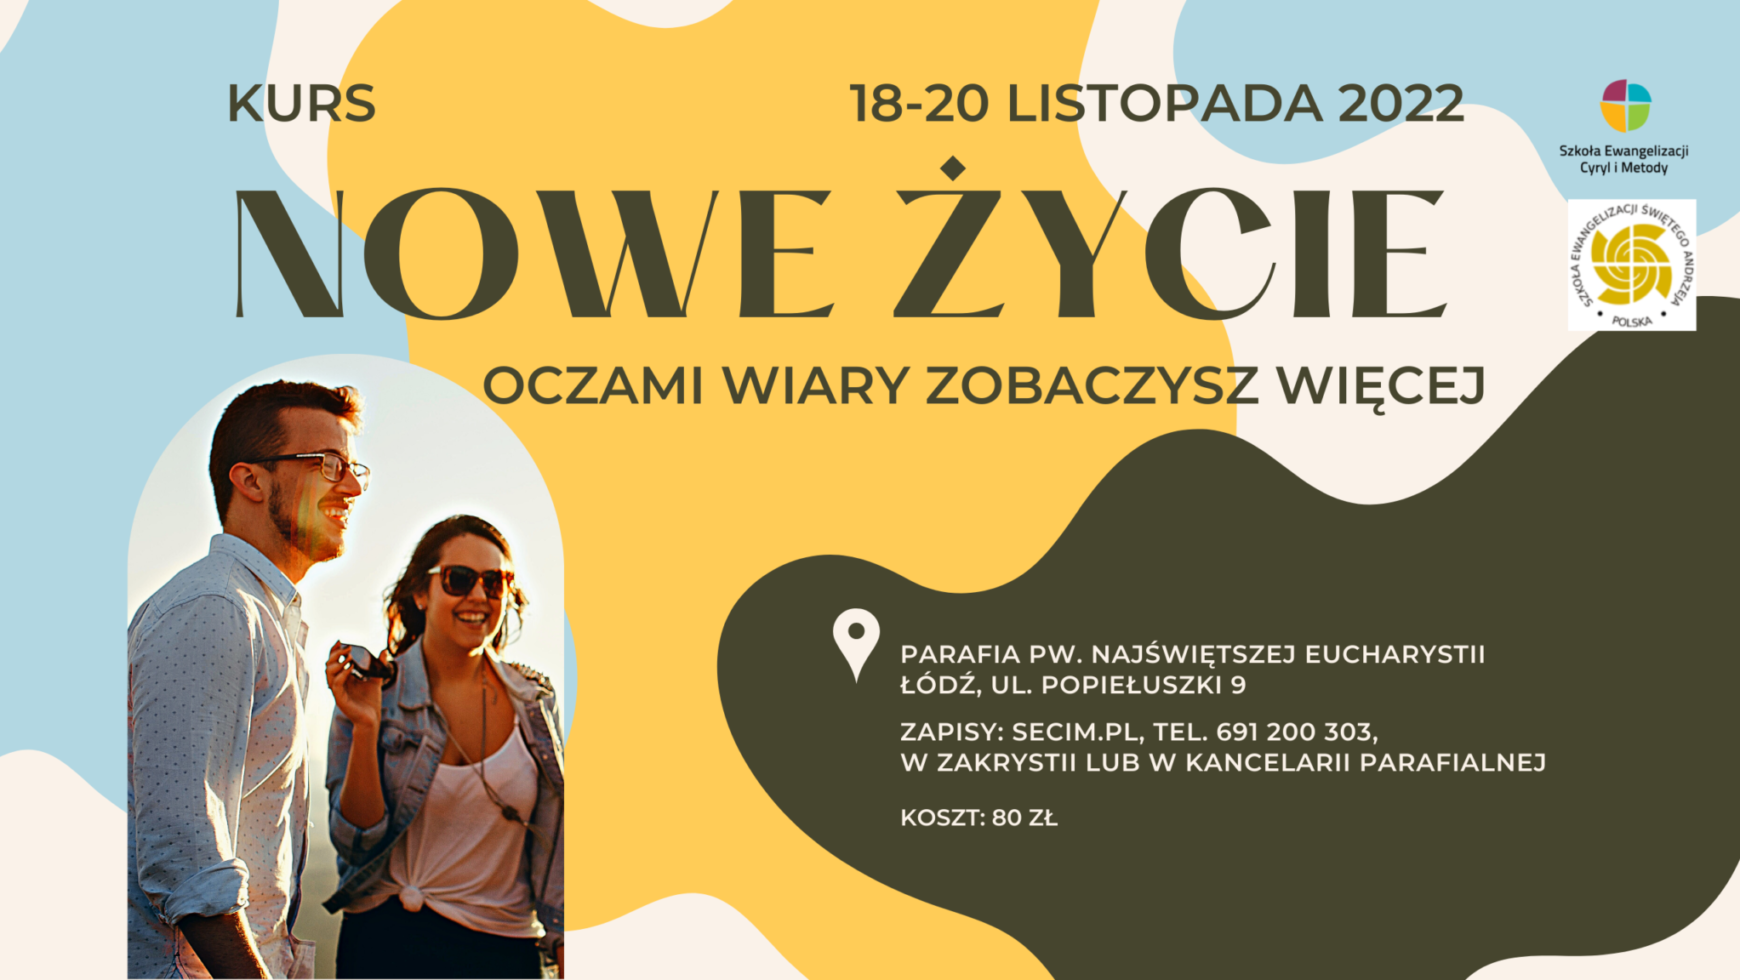 Kurs Nowe Życie, Łódź